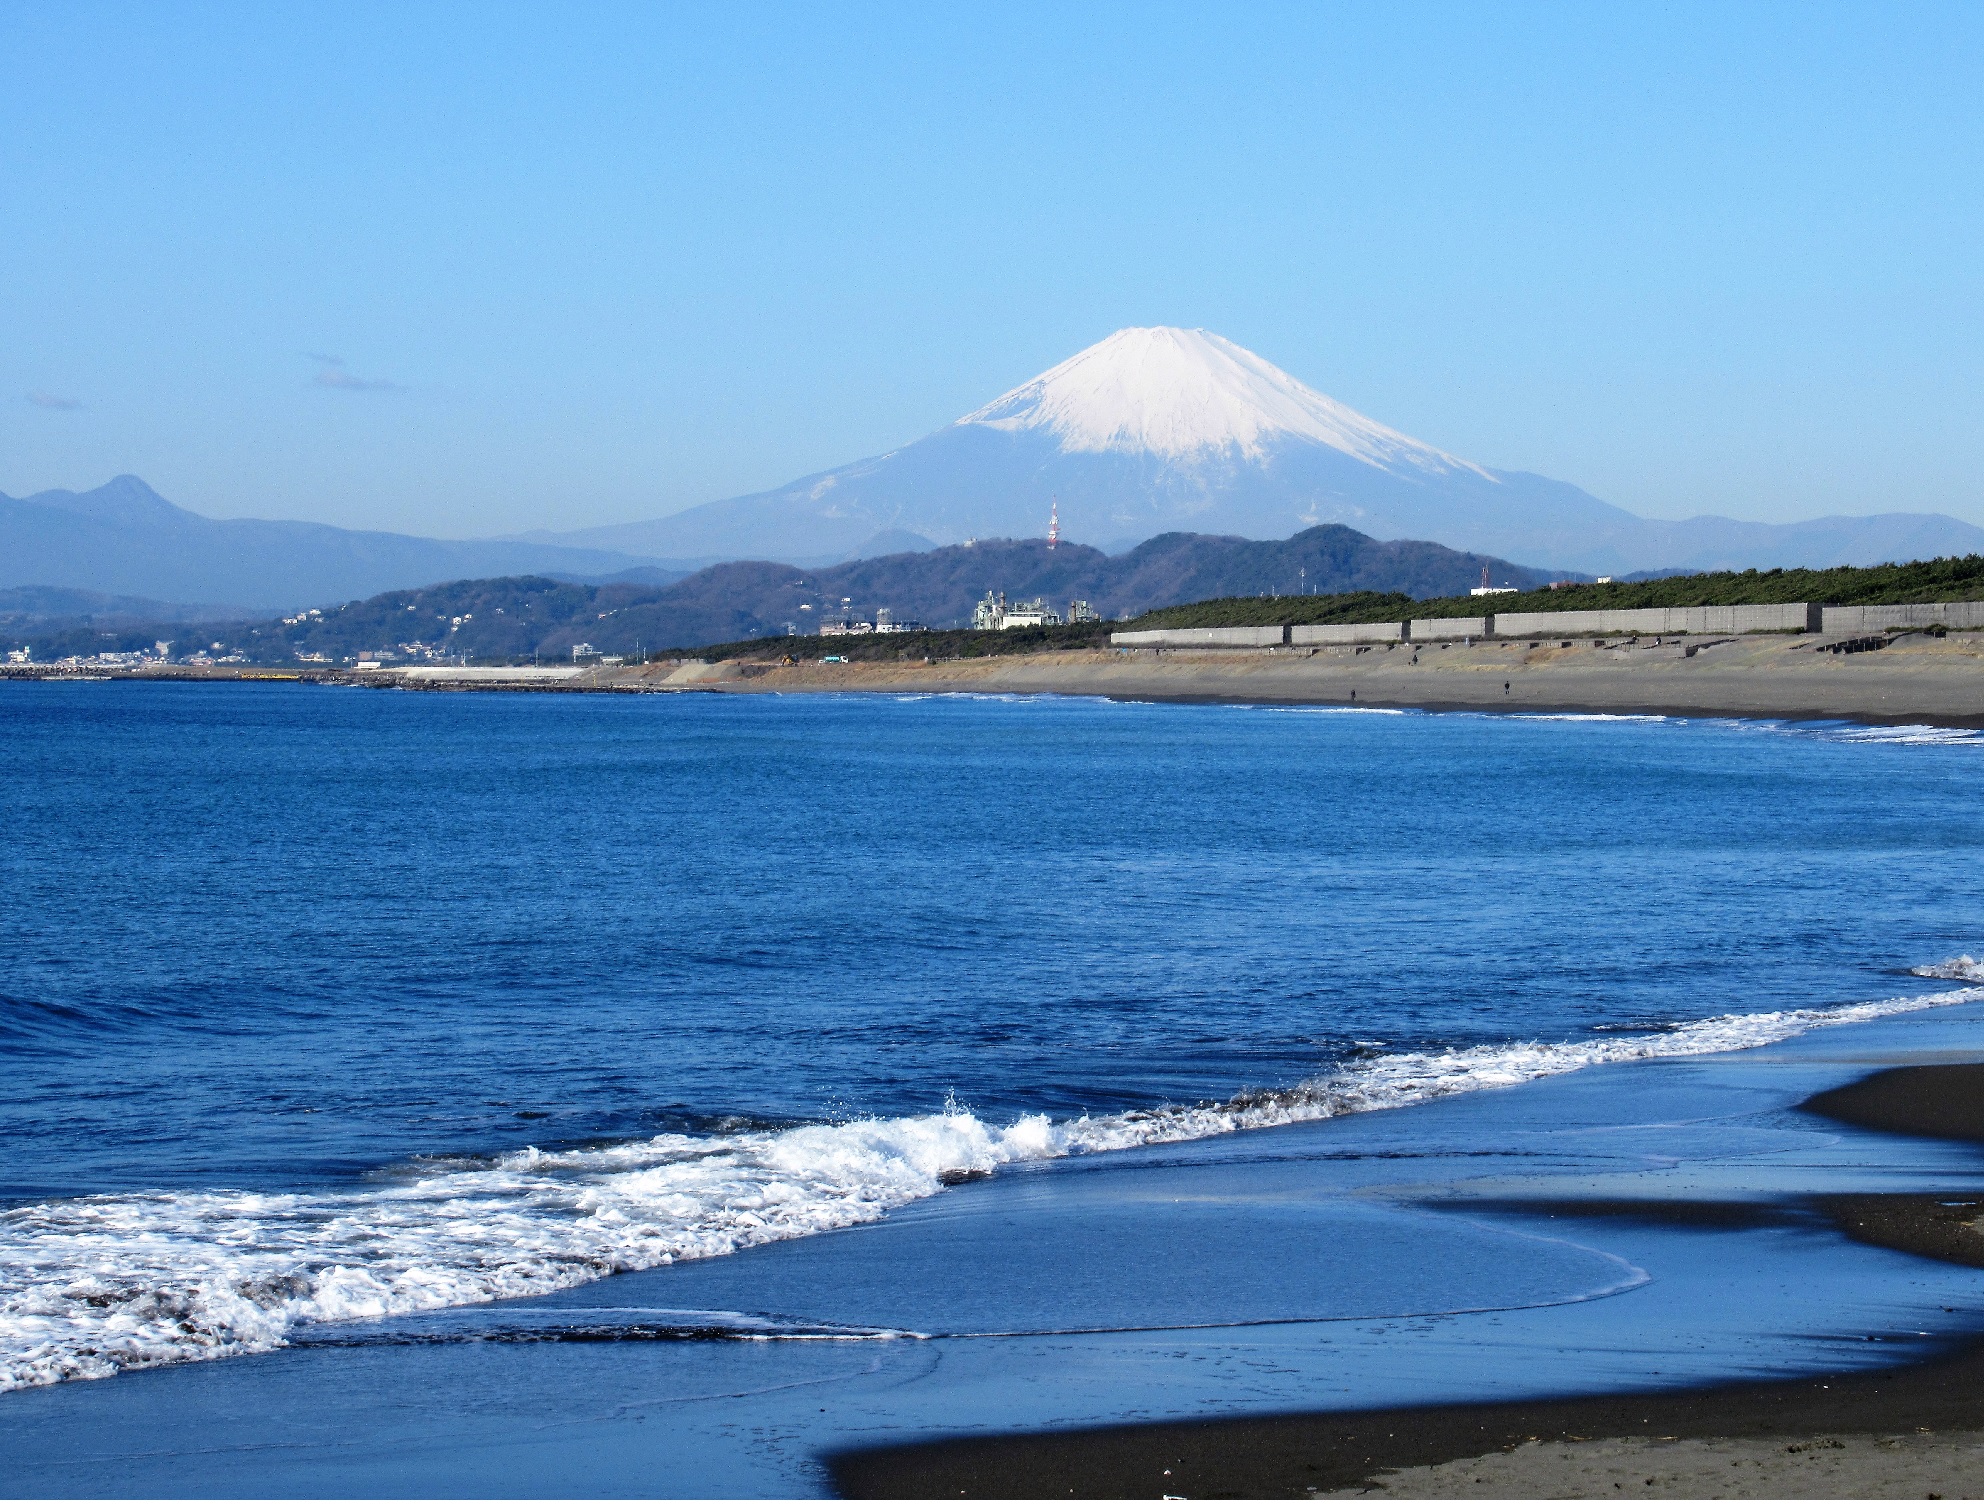 Mt. Fuji and Nishihama Beach